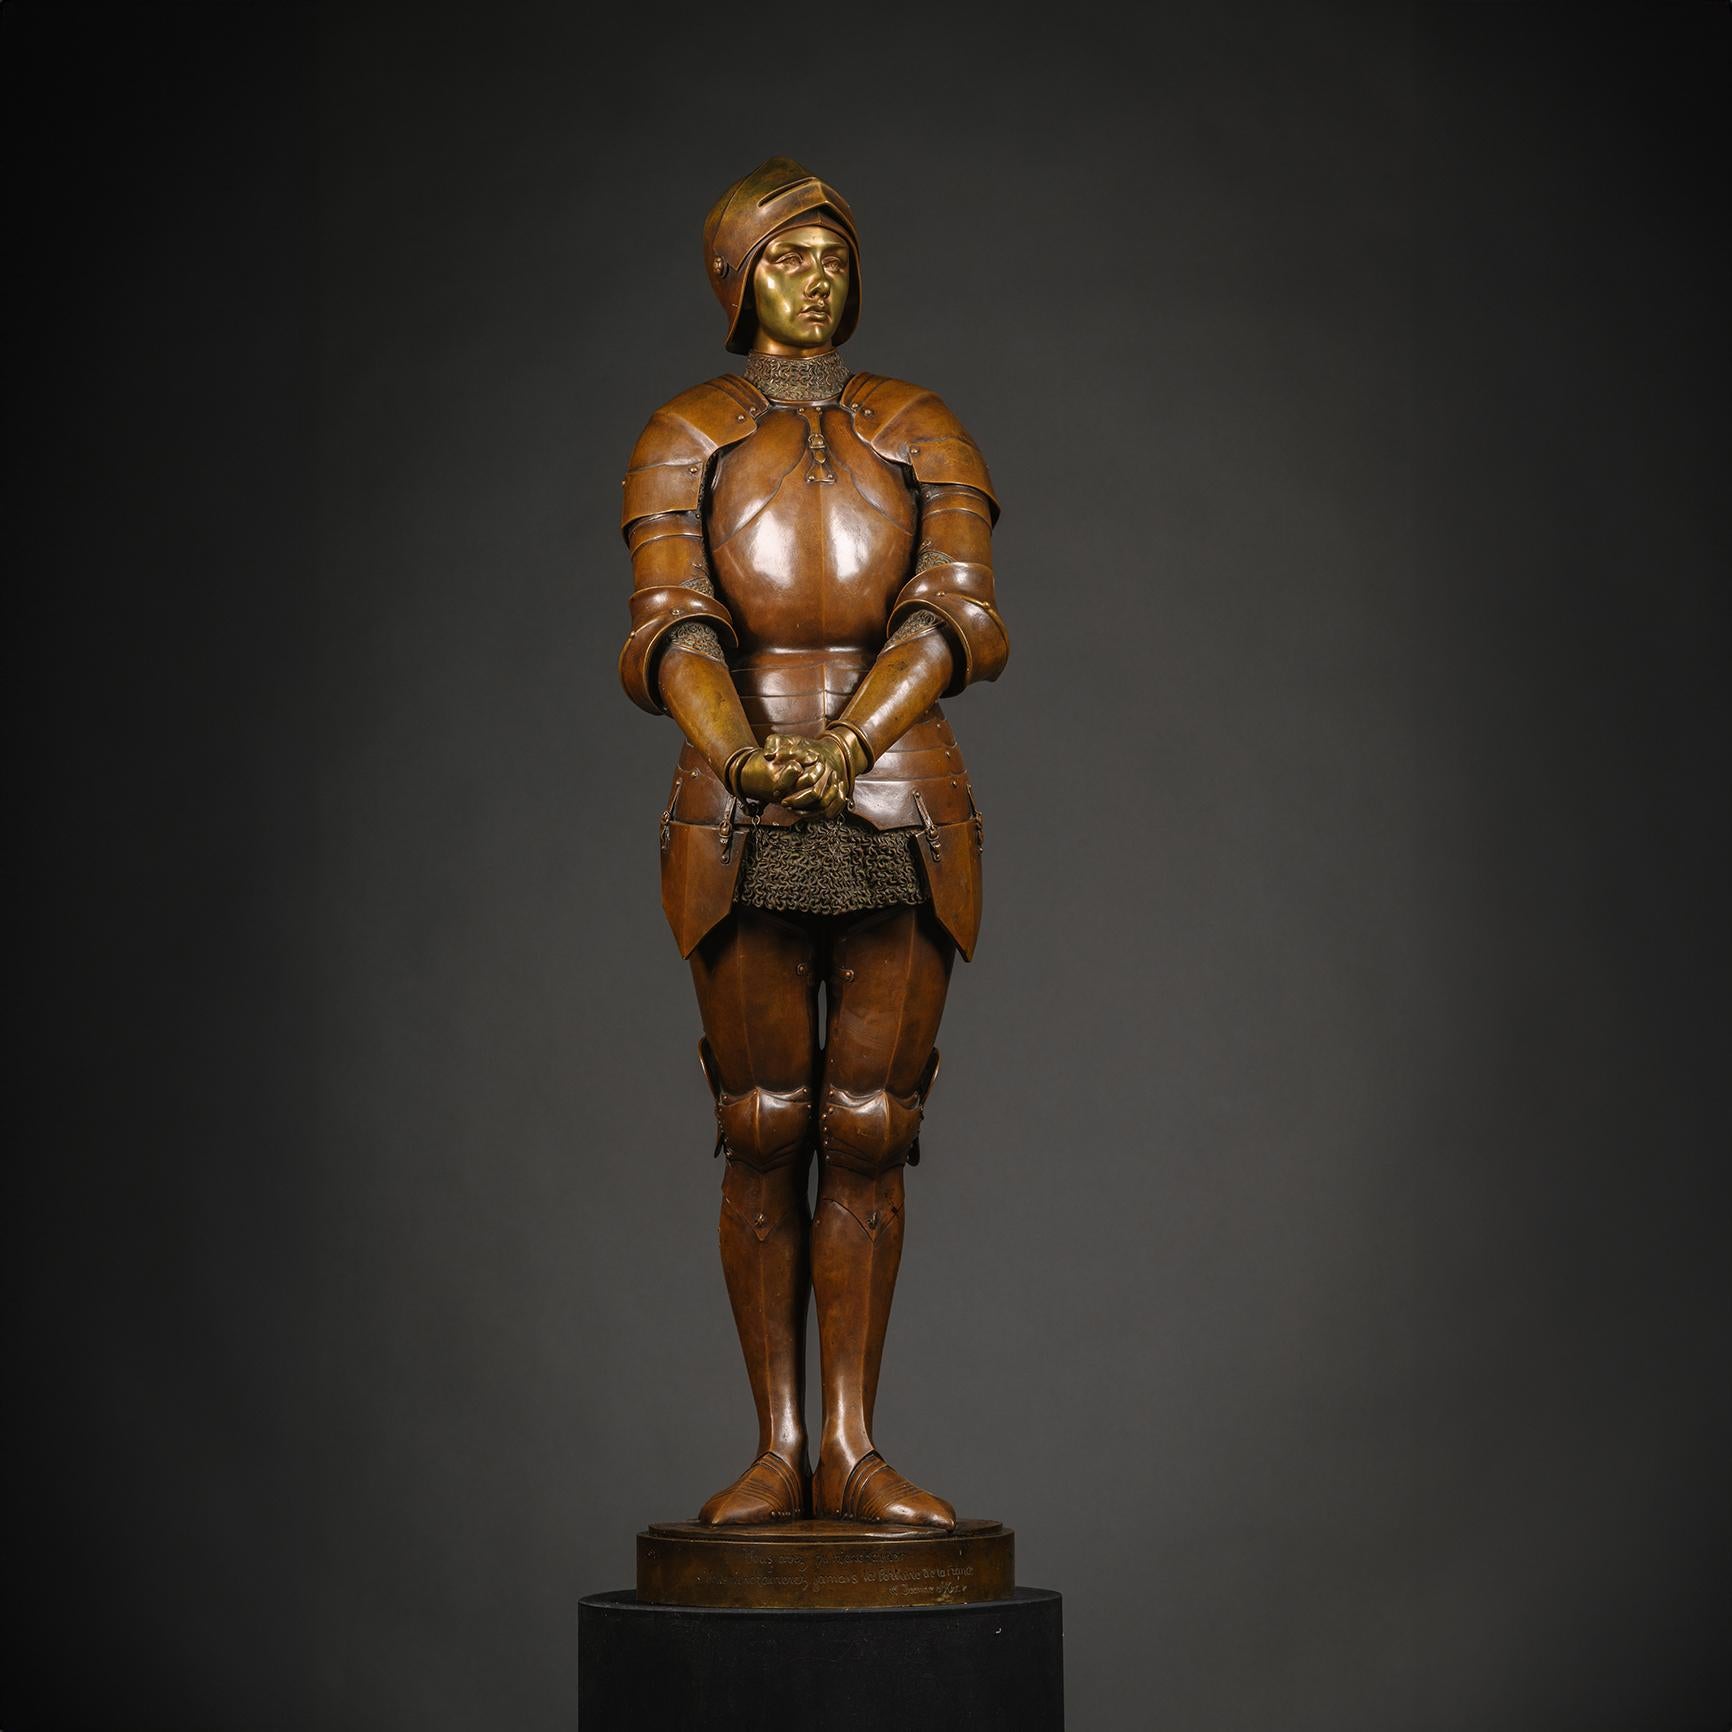 Grande figure en bronze patiné de Jeanne d'Arc Prisonnière, par Louis-Ernest Barrias (français, 1841-1905).

Jeanne d'Arc représentée debout, menottée, en armure et coiffée d'un casque bascinet.

Signé 